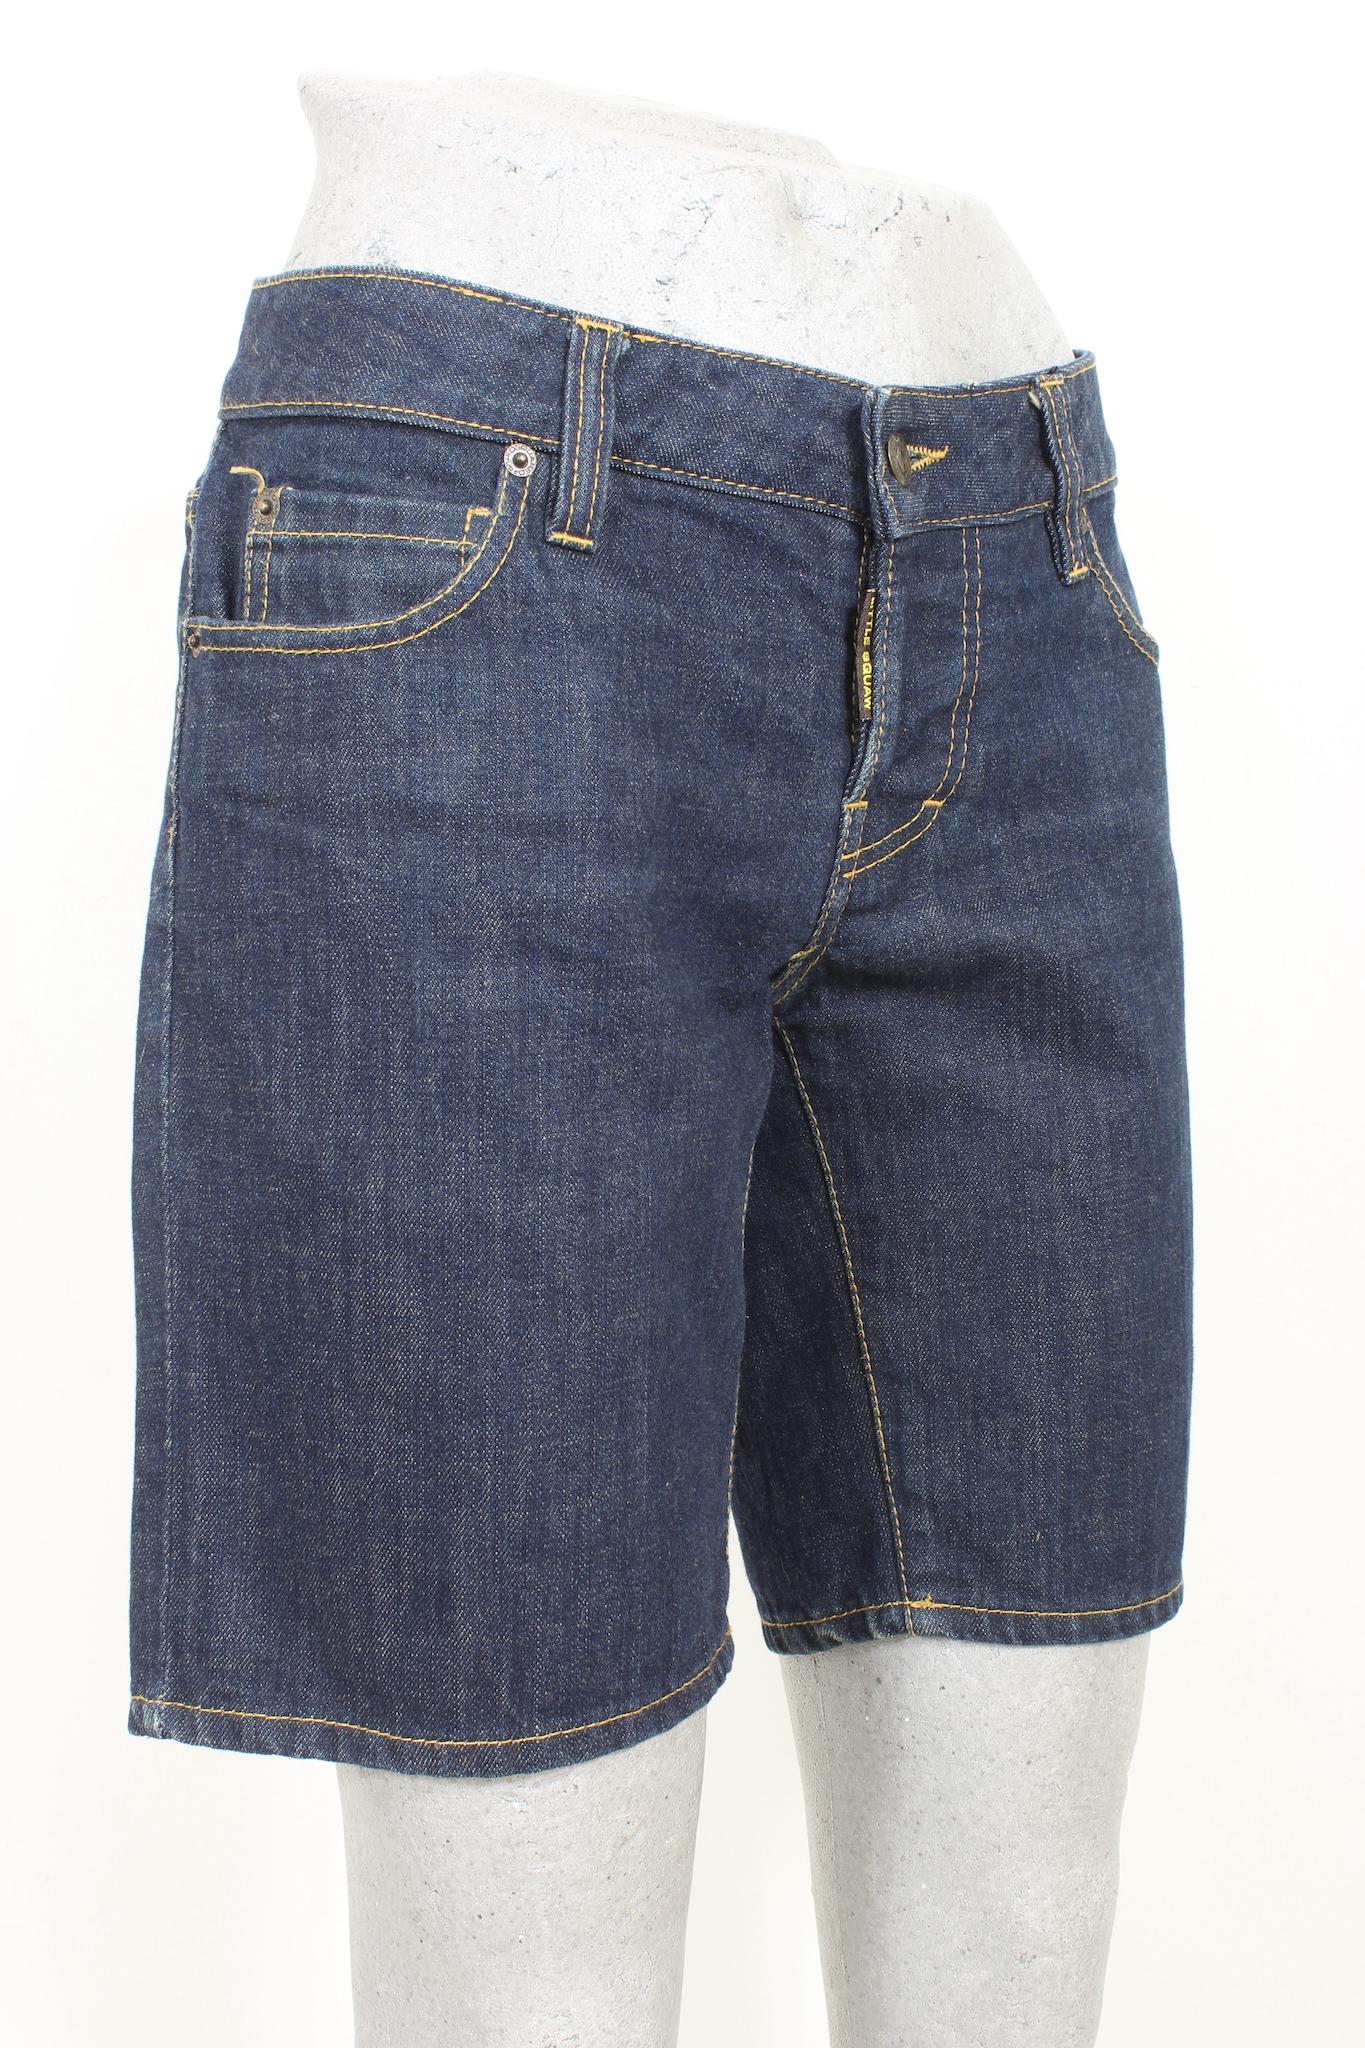 Erleben Sie lässigen Stil mit dieser kurzen Jeanshose aus blauer Baumwolle von Dsquared aus den 2000er Jahren. Diese Jeans aus 100 % Baumwolle in mittlerer Waschung verspricht sowohl Komfort als auch Stil. Genießen Sie zeitlose Denim-Looks mit einem